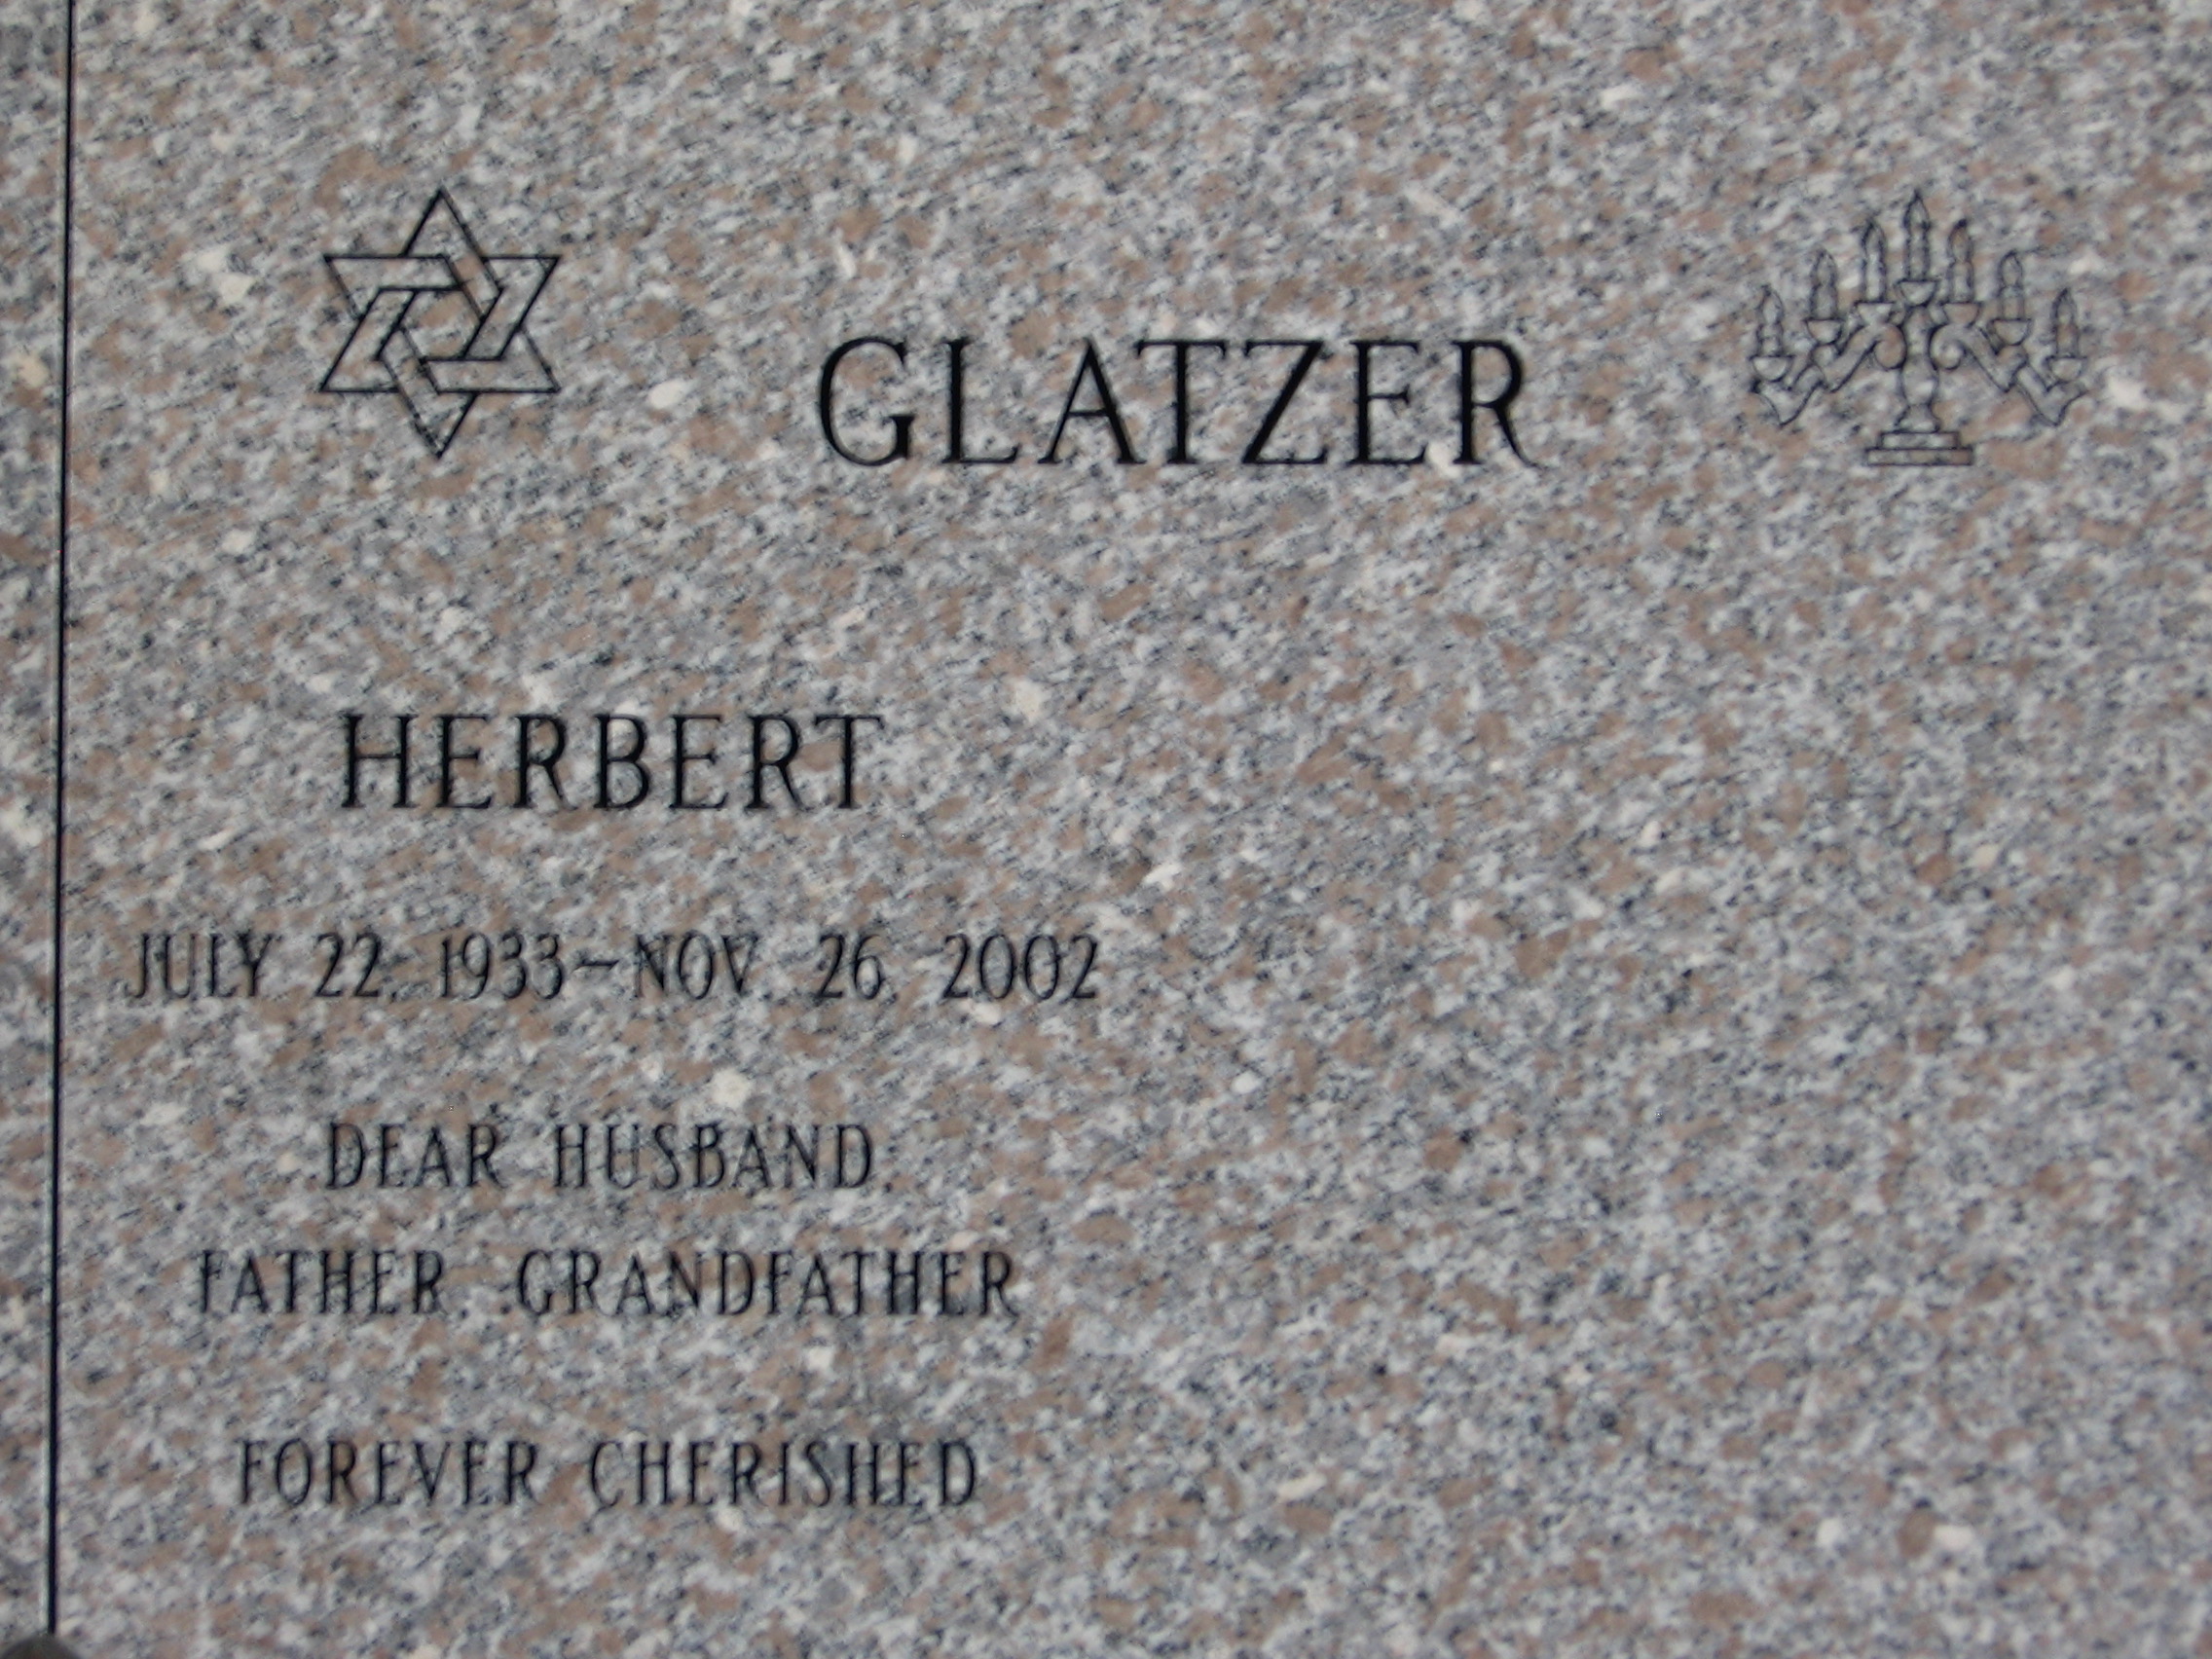 Herbert Glatzer